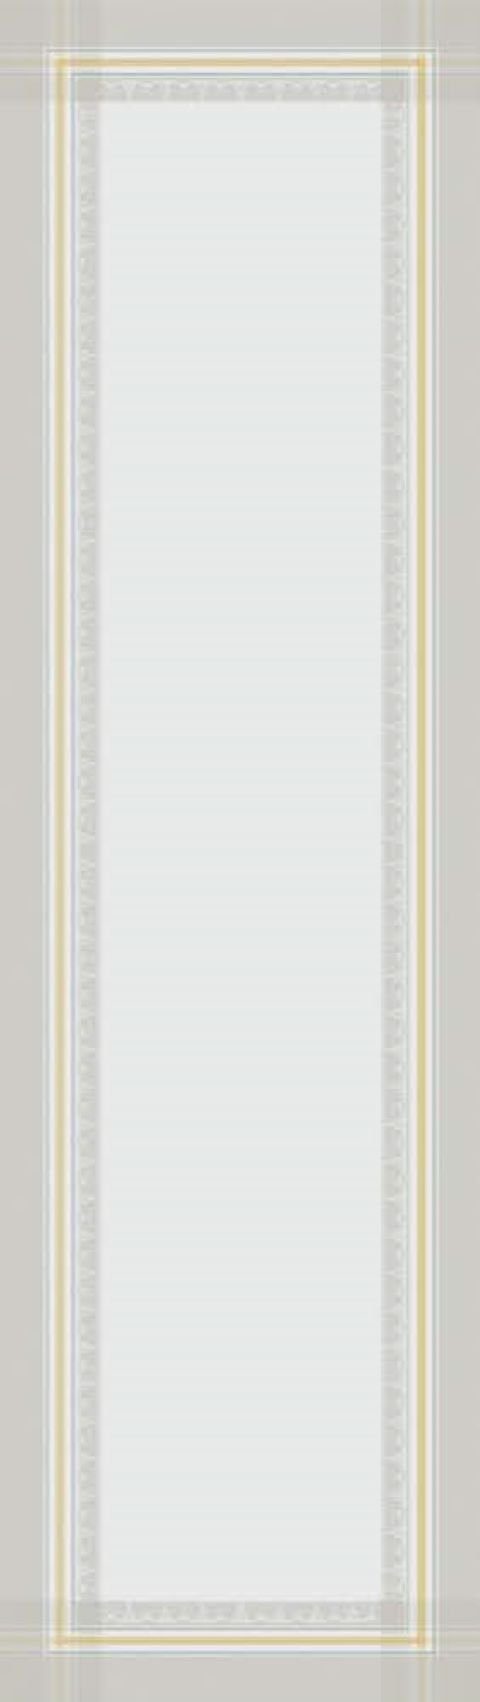 Garnier Thiebaut Tischläufer Tischläufer Galerie des Glaces Vermeil 52x230 cm, jacquard-gewebt